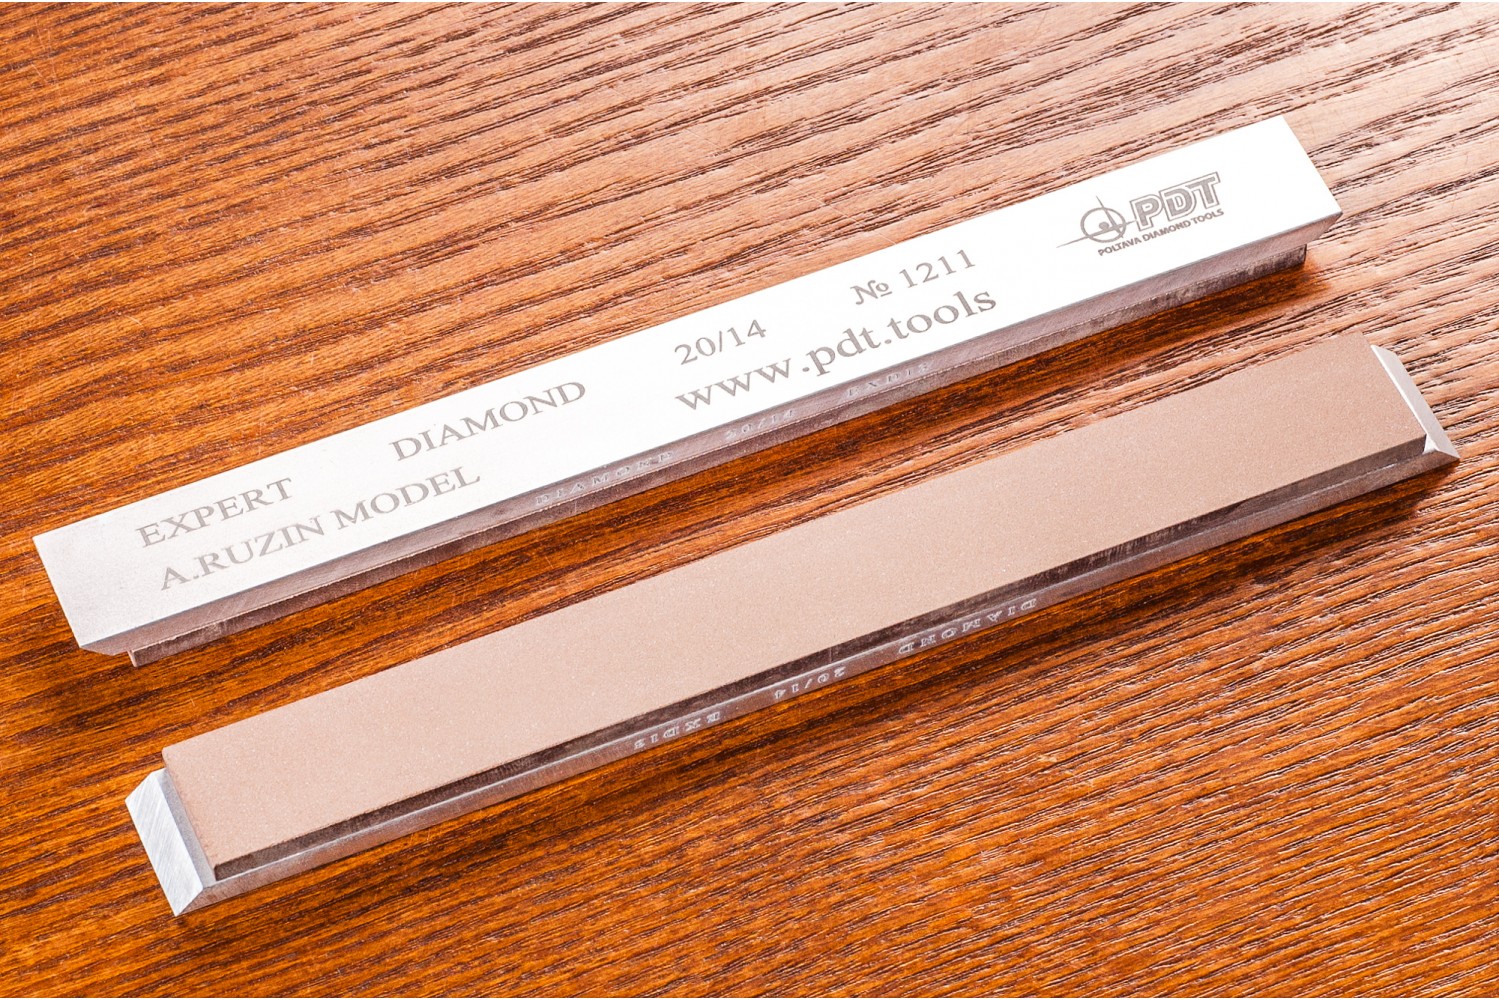 Алмазный брусок для заточки PDT EXPERT 150-17-3мм 20/14 мкм на алюминиевом бланке устройство для заточки ножей sturm